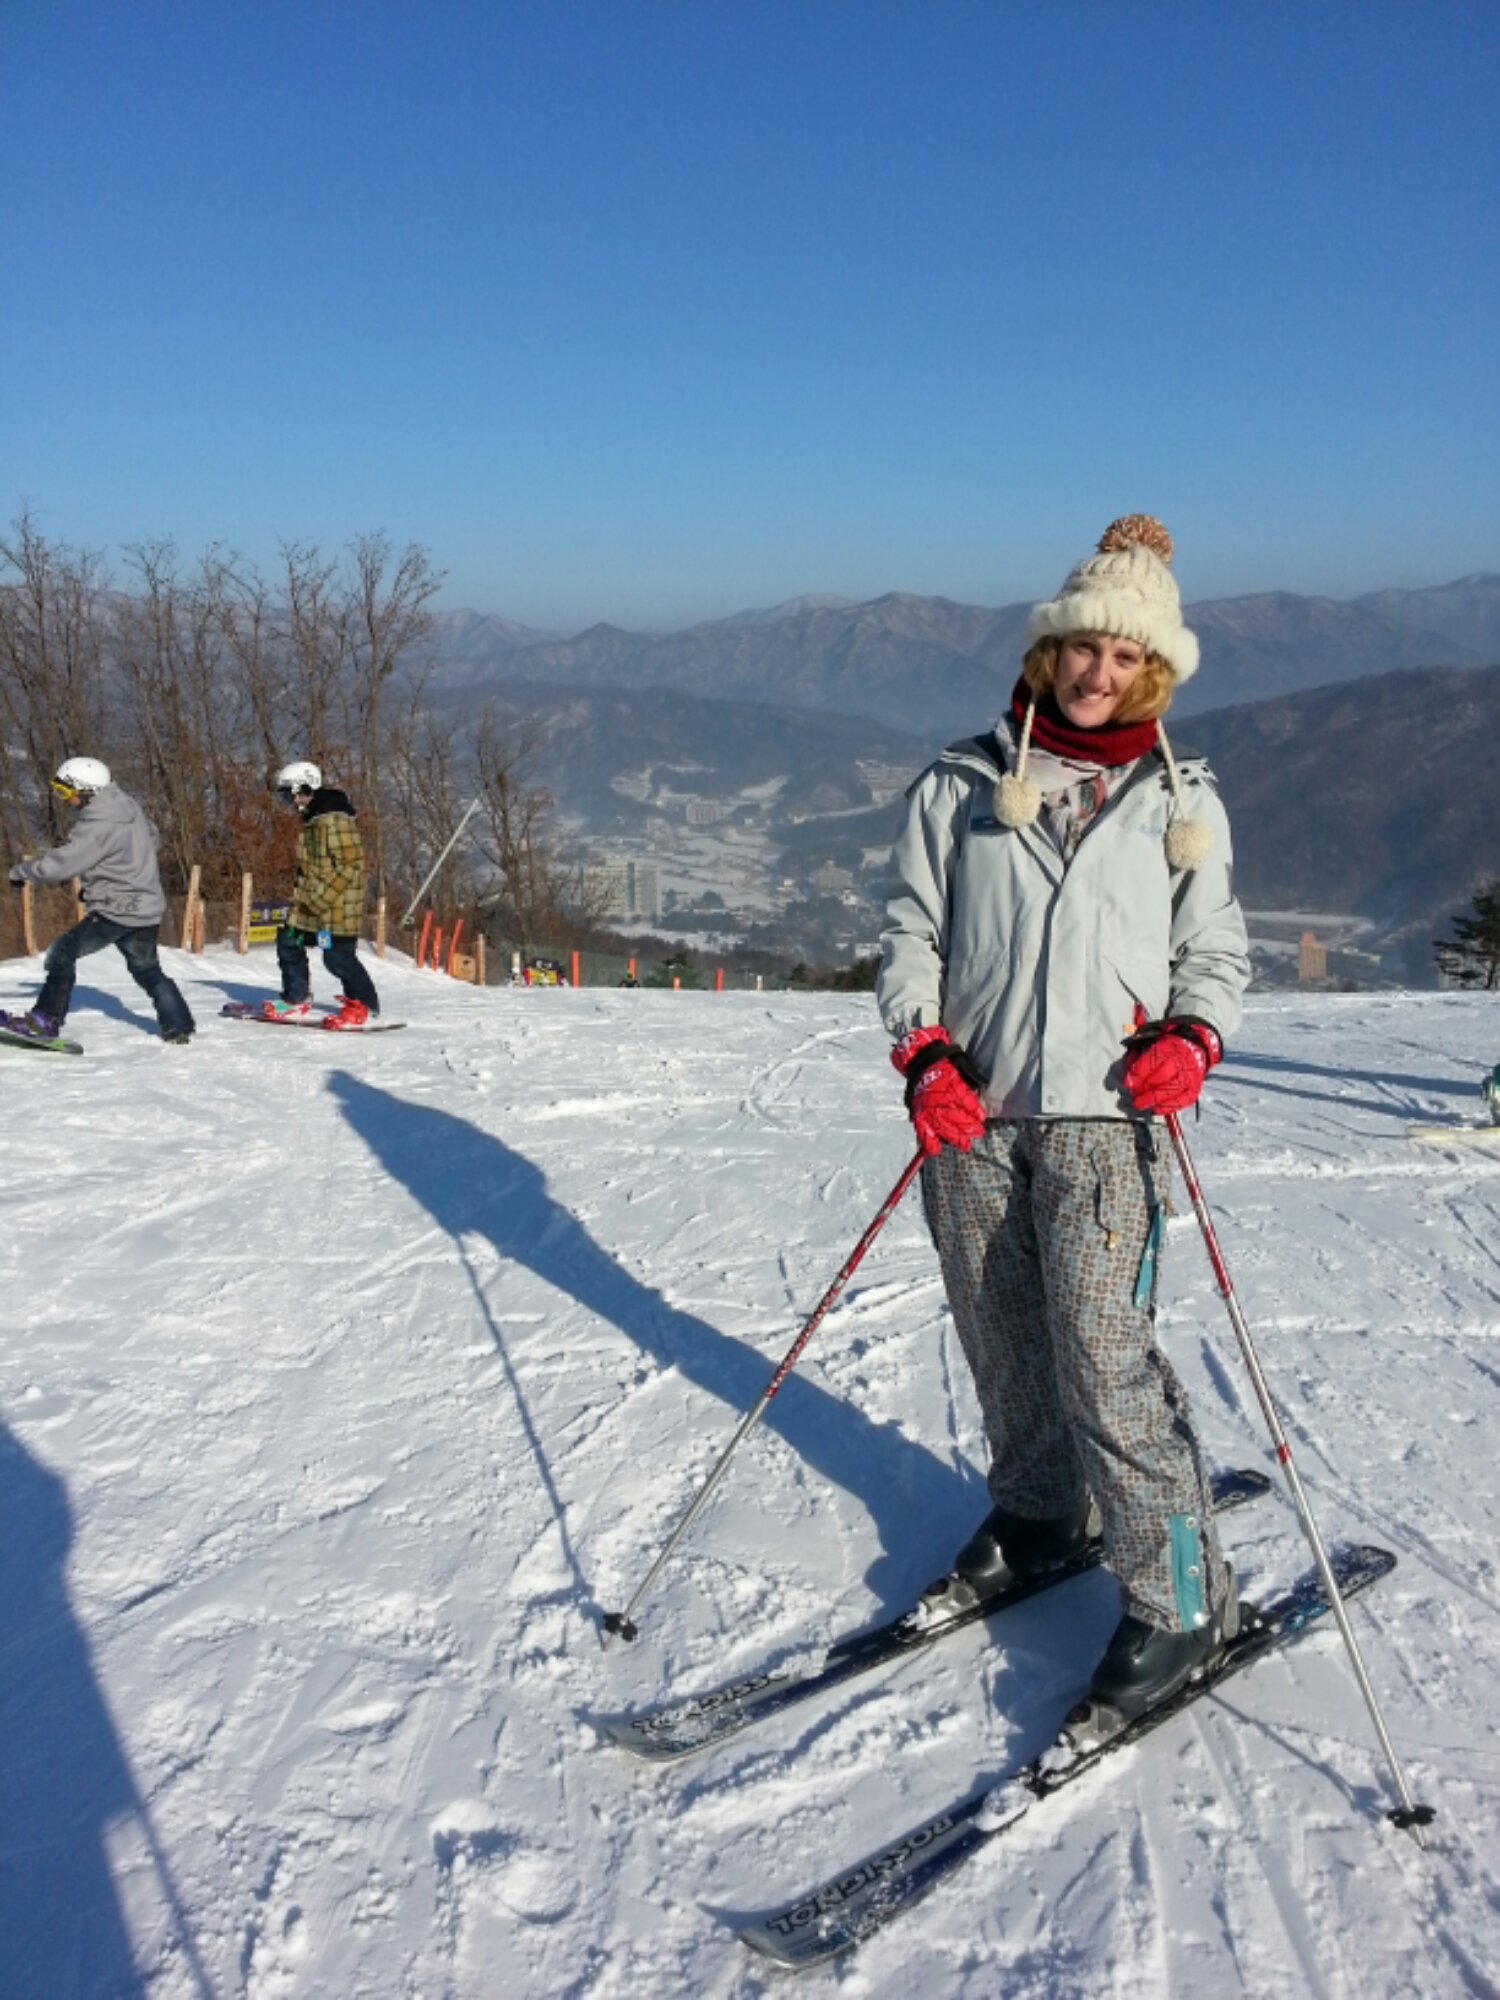 YongPyong Resort - A Winter Wonderland - Journalist On The Run